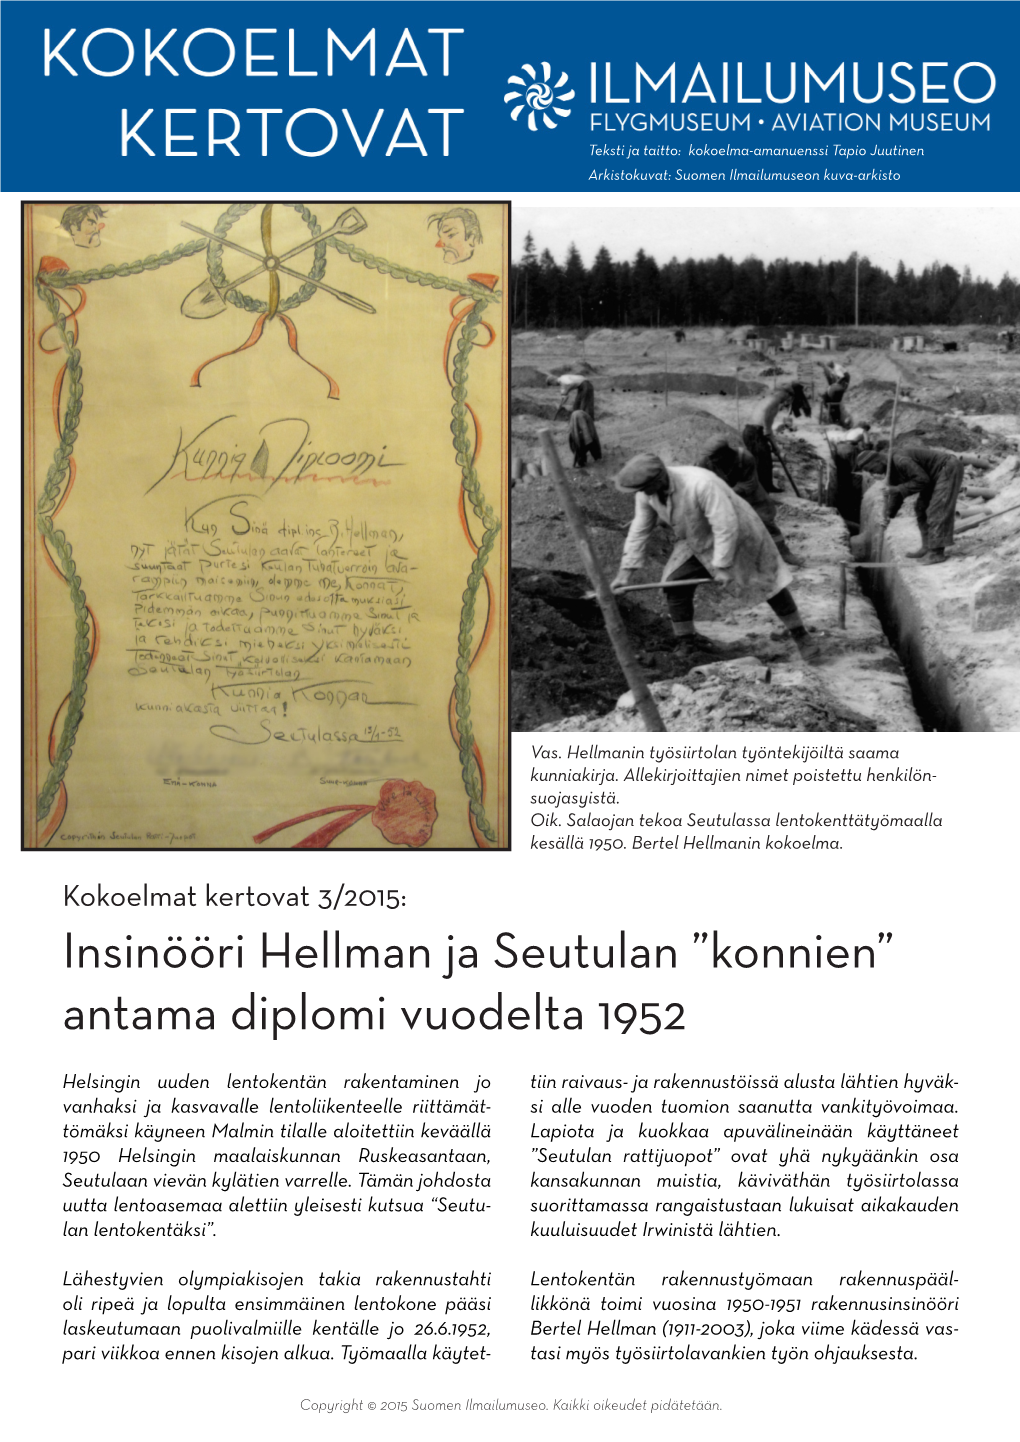 Insinööri Hellman Ja Seutulan ”Konnien” Antama Diplomi Vuodelta 1952